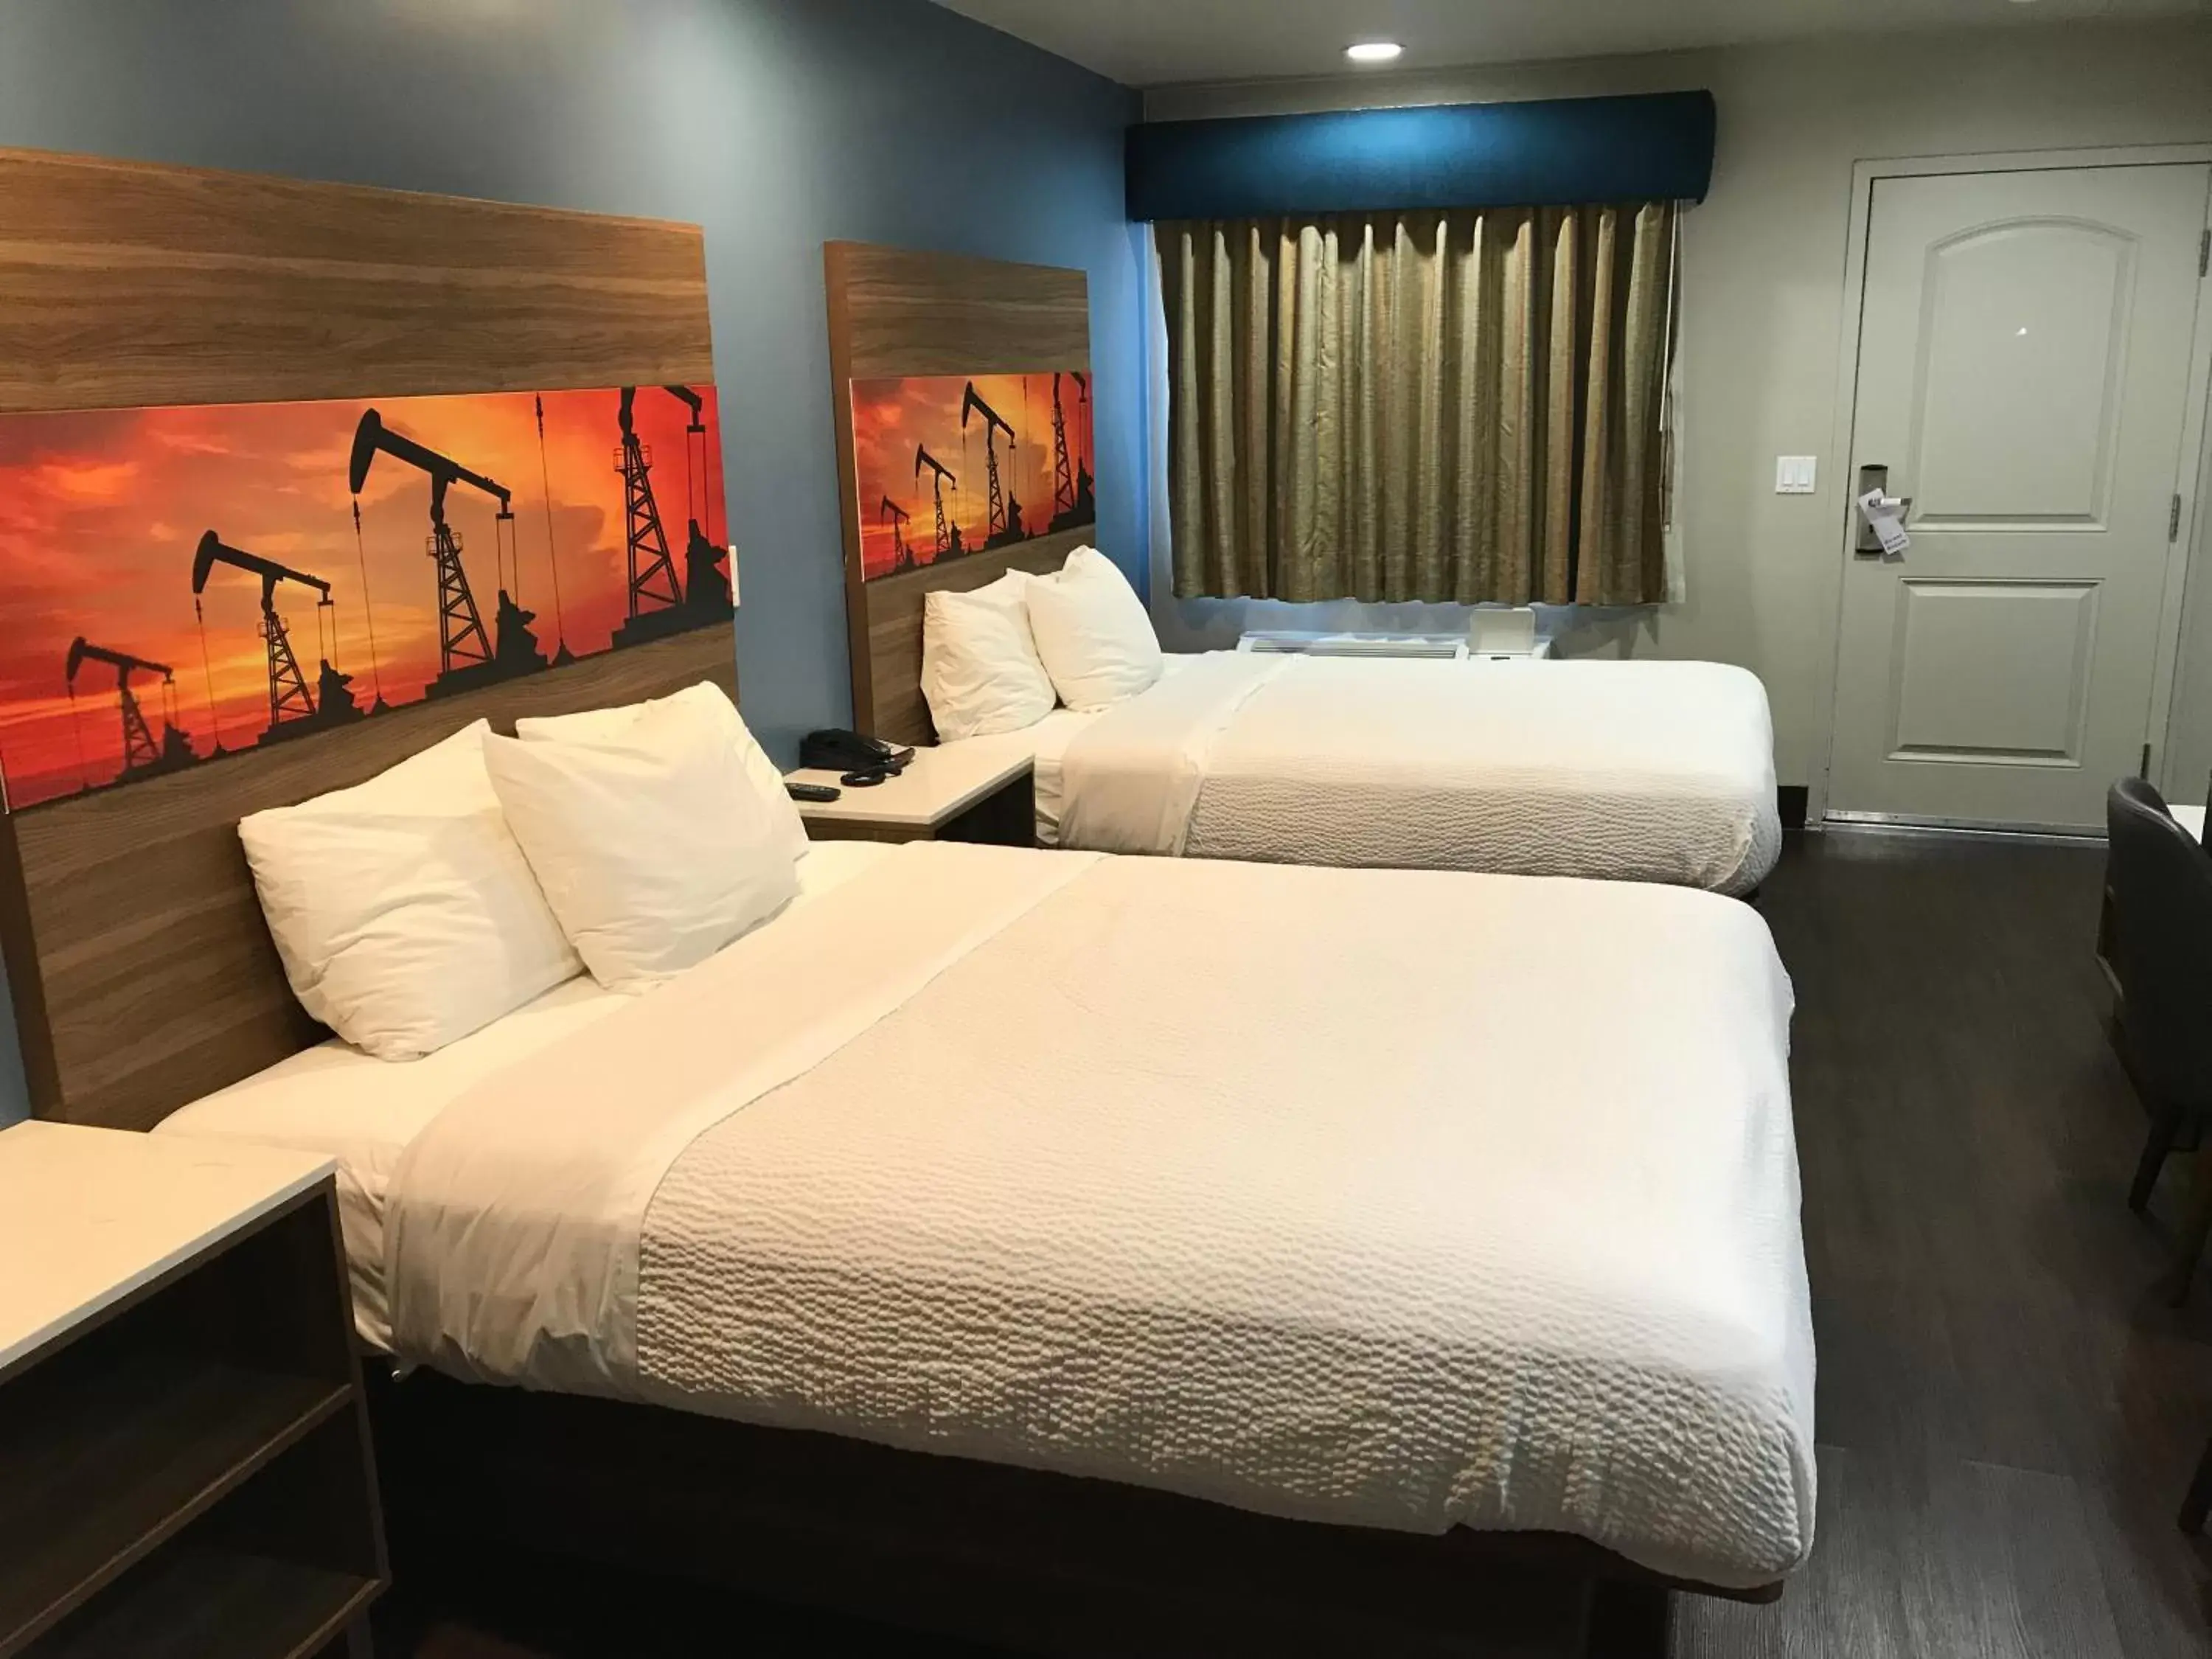 Bedroom, Bed in Hyland Motel Brea